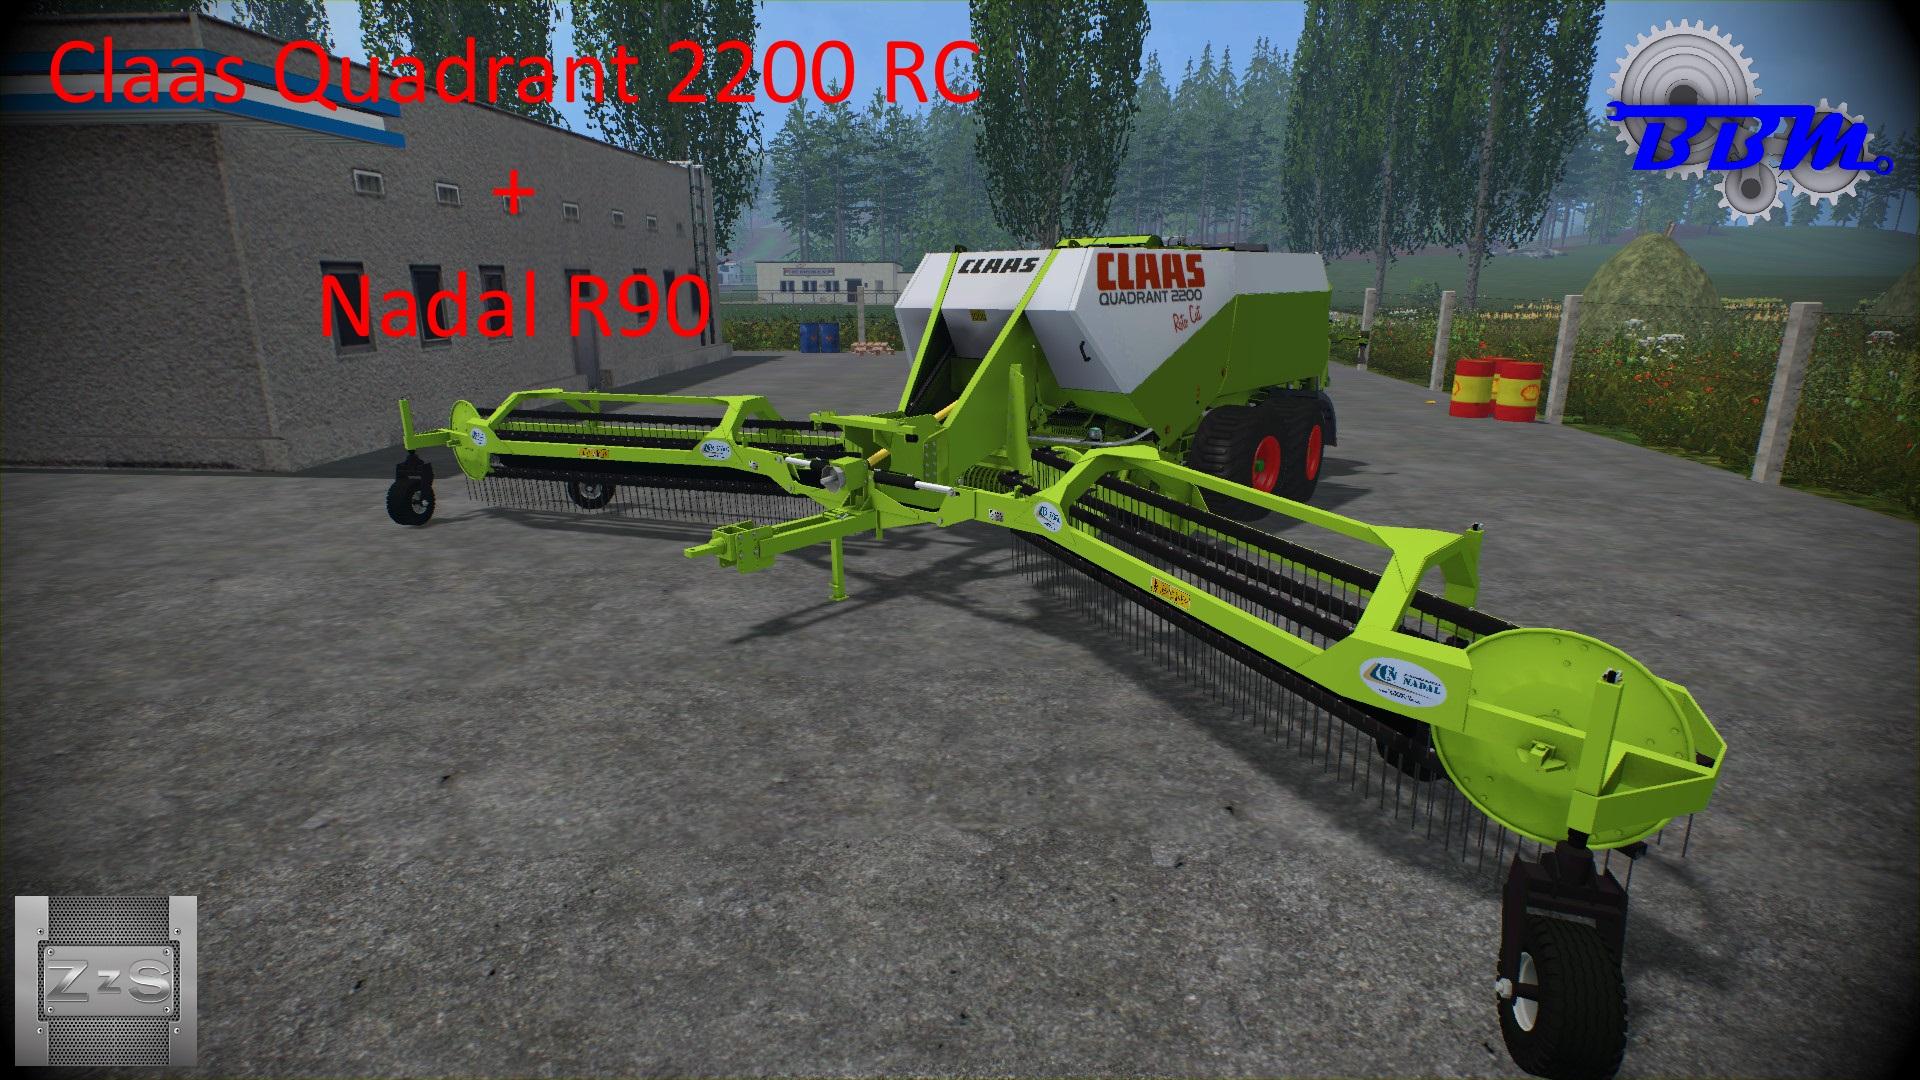 Claas Quadrant 2200 Rc Nadal R90 V10 • Farming Simulator 19 17 22 Mods Fs19 17 22 Mods 5436